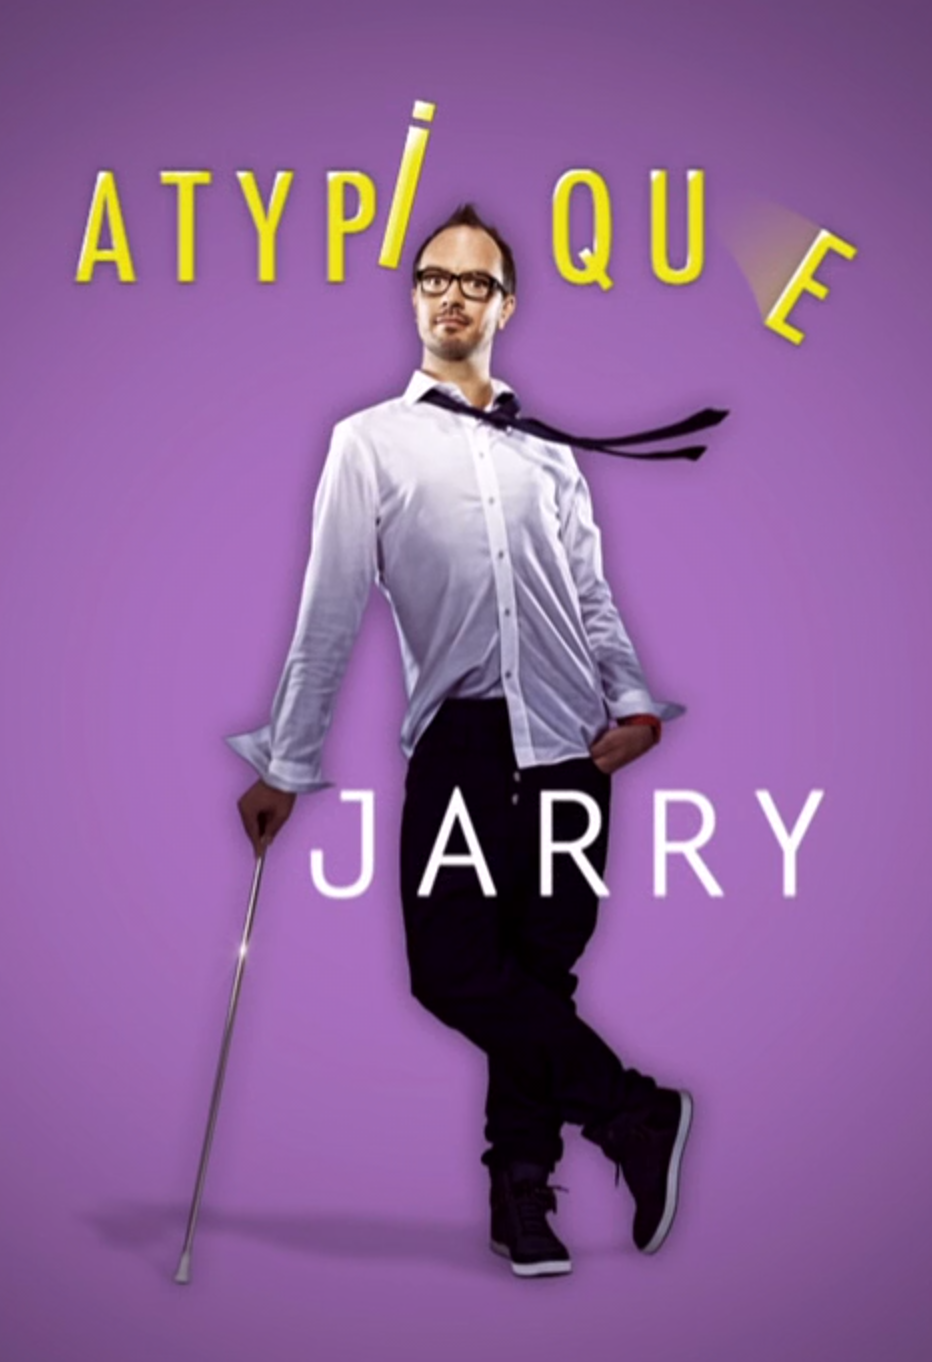 Jarry présente son spectacle "Atypique" à l'Espace Julien